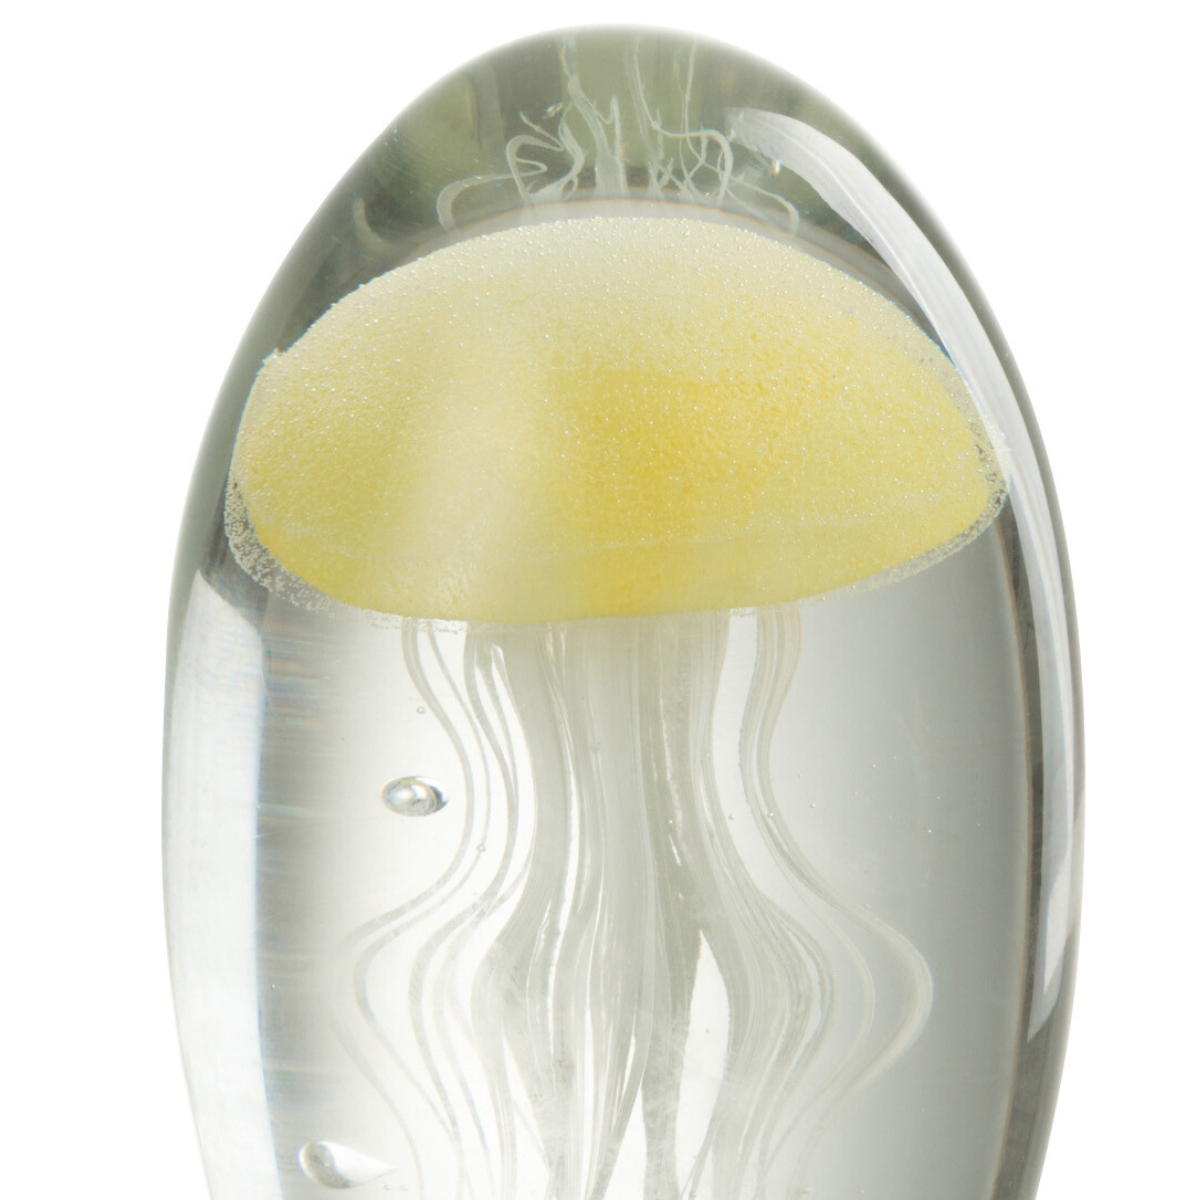 Jellyfish yellow glass paperweight 13 cm